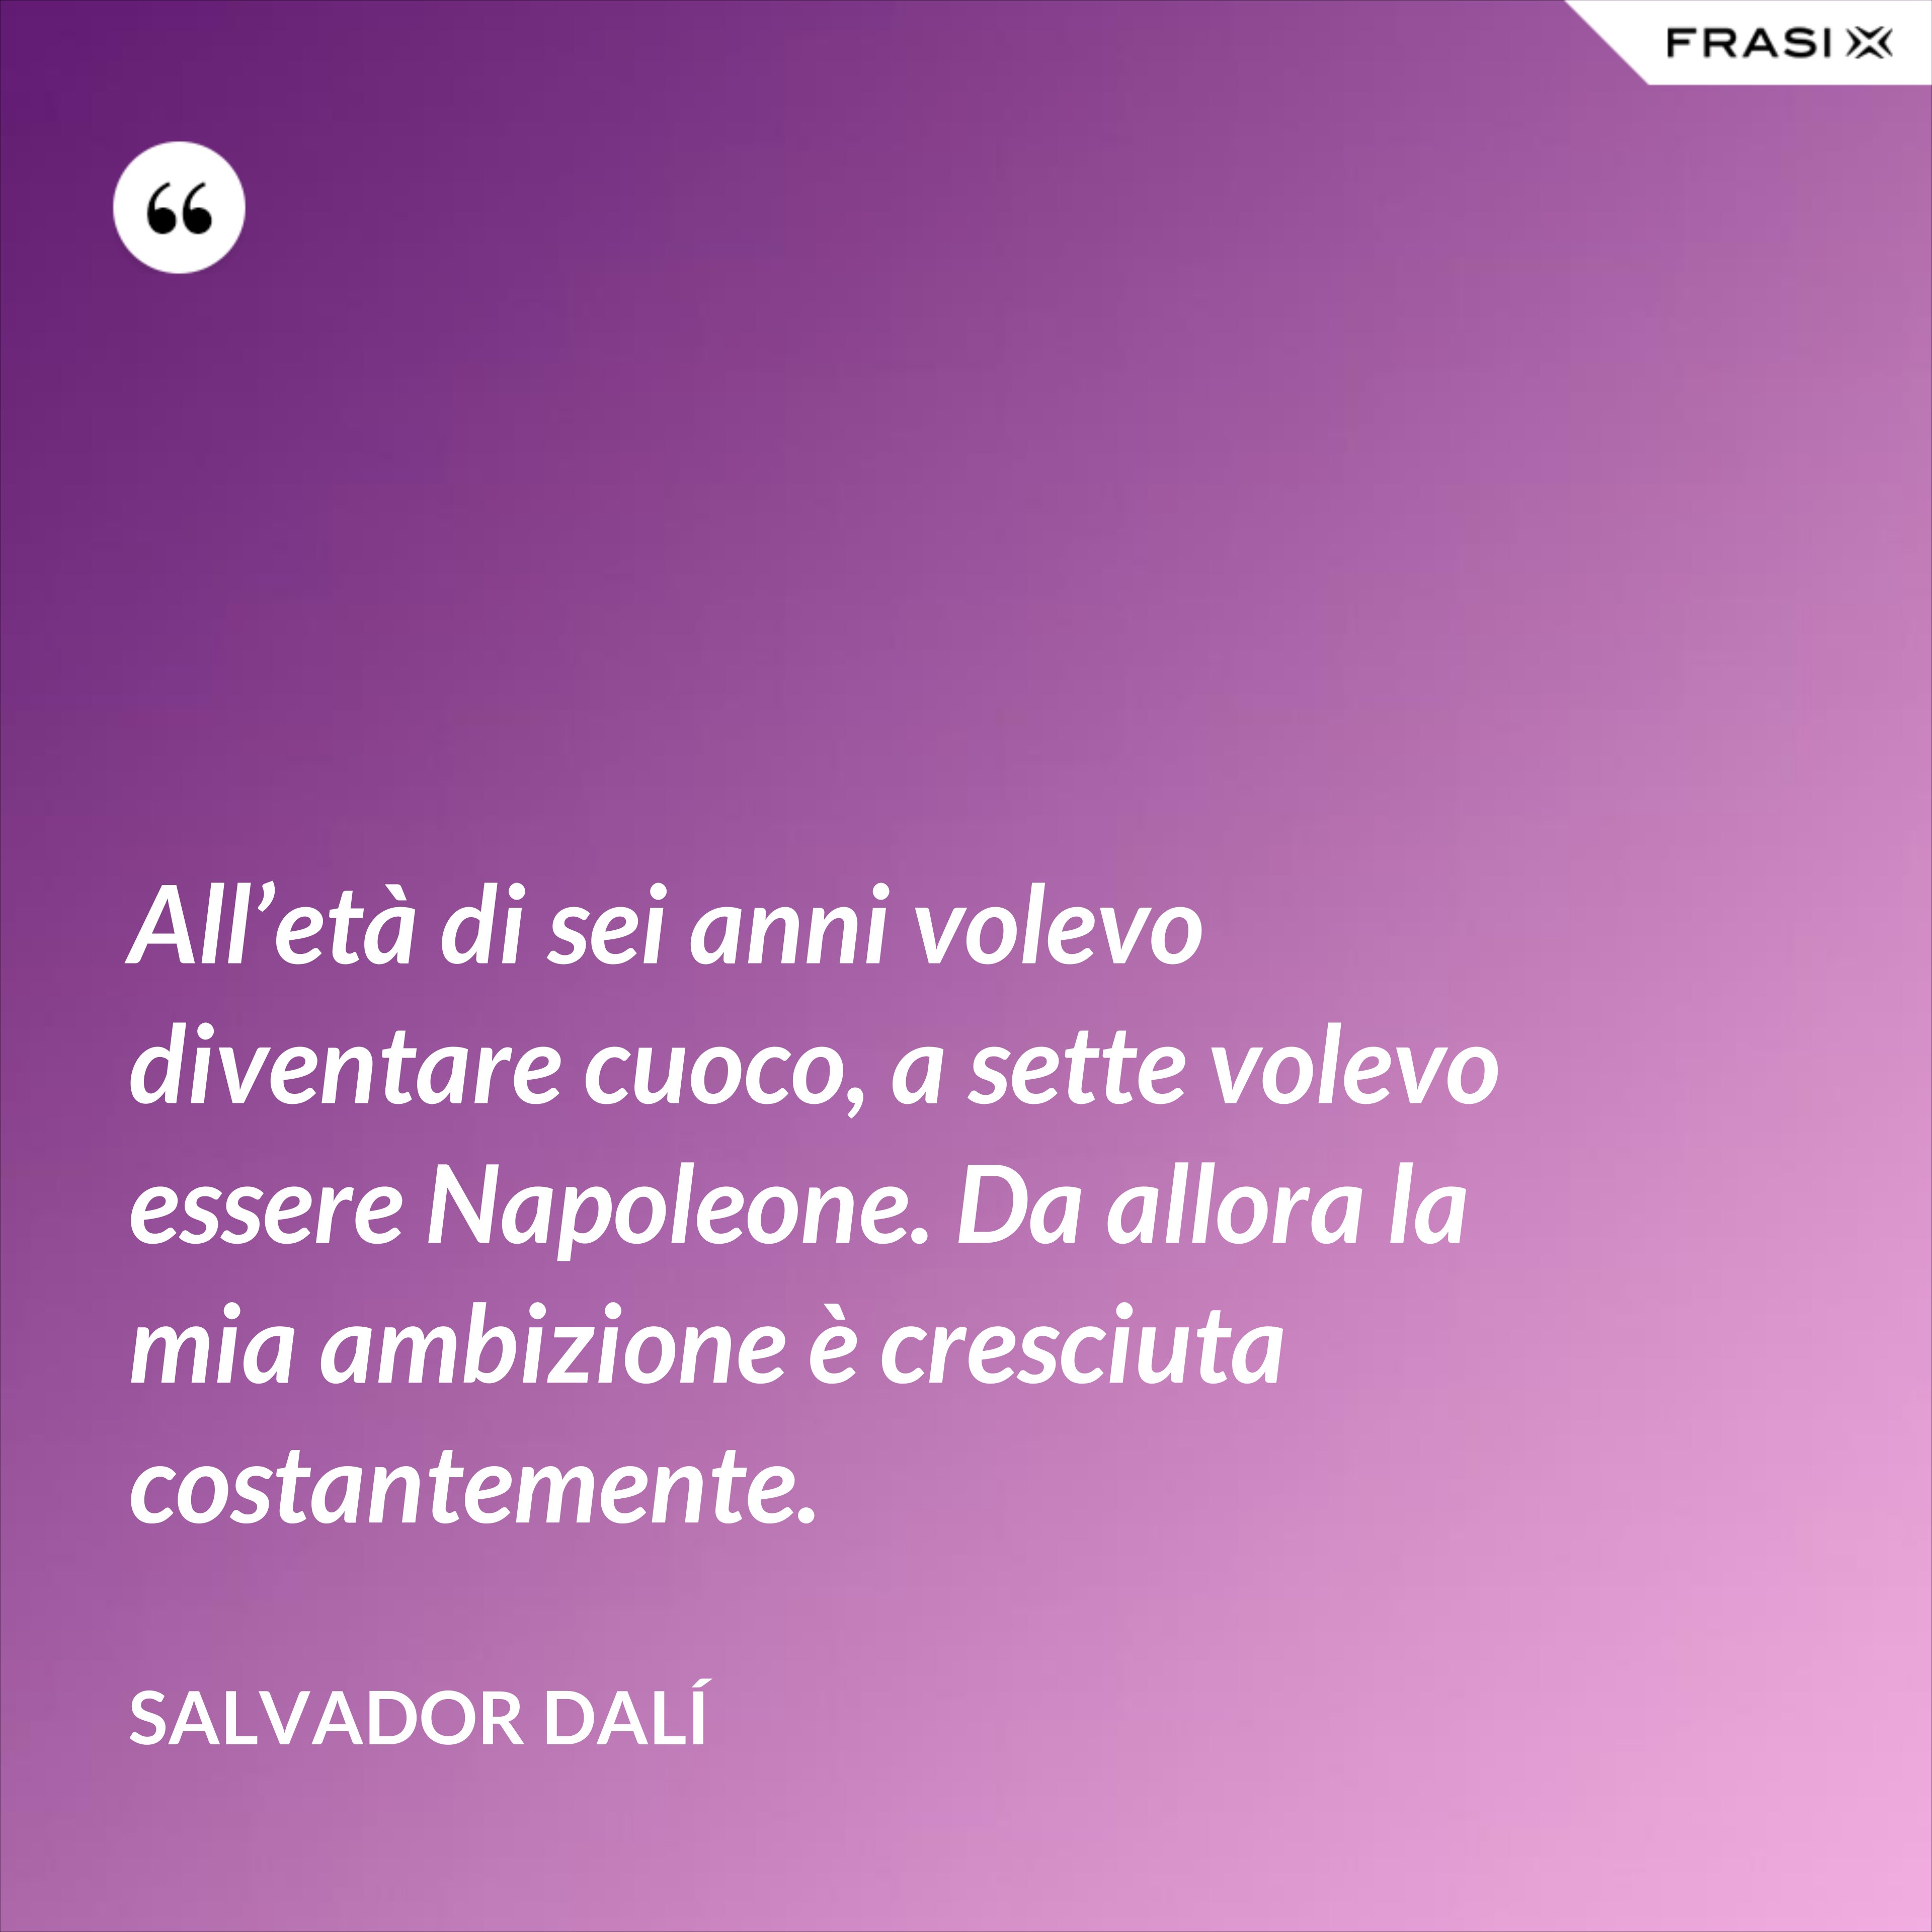 All’età di sei anni volevo diventare cuoco, a sette volevo essere Napoleone. Da allora la mia ambizione è cresciuta costantemente. - Salvador Dalí